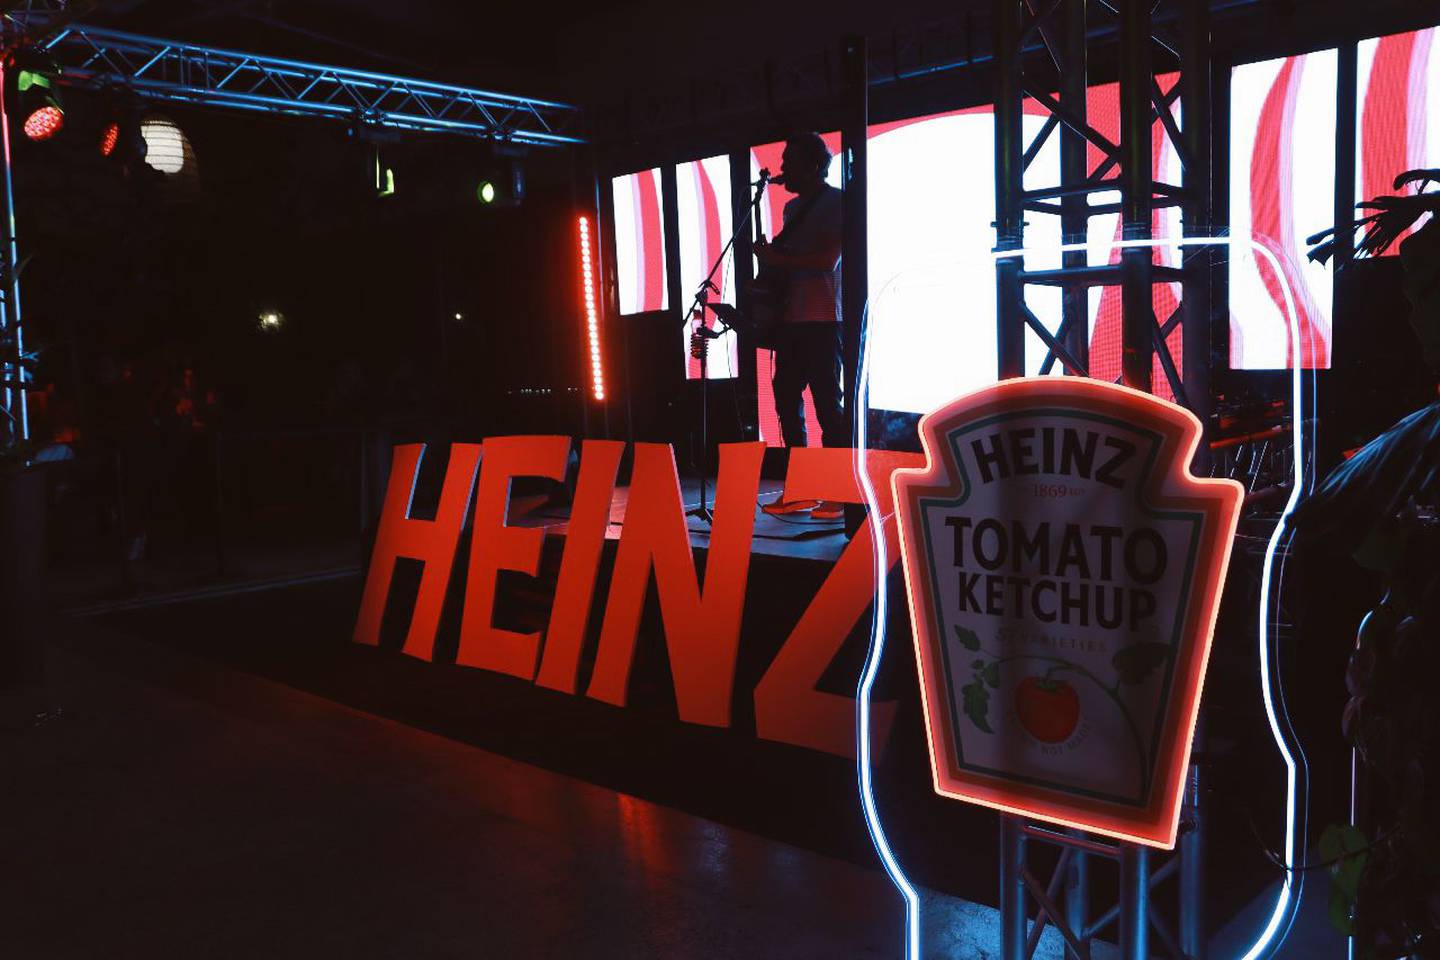 Heinz Club 57